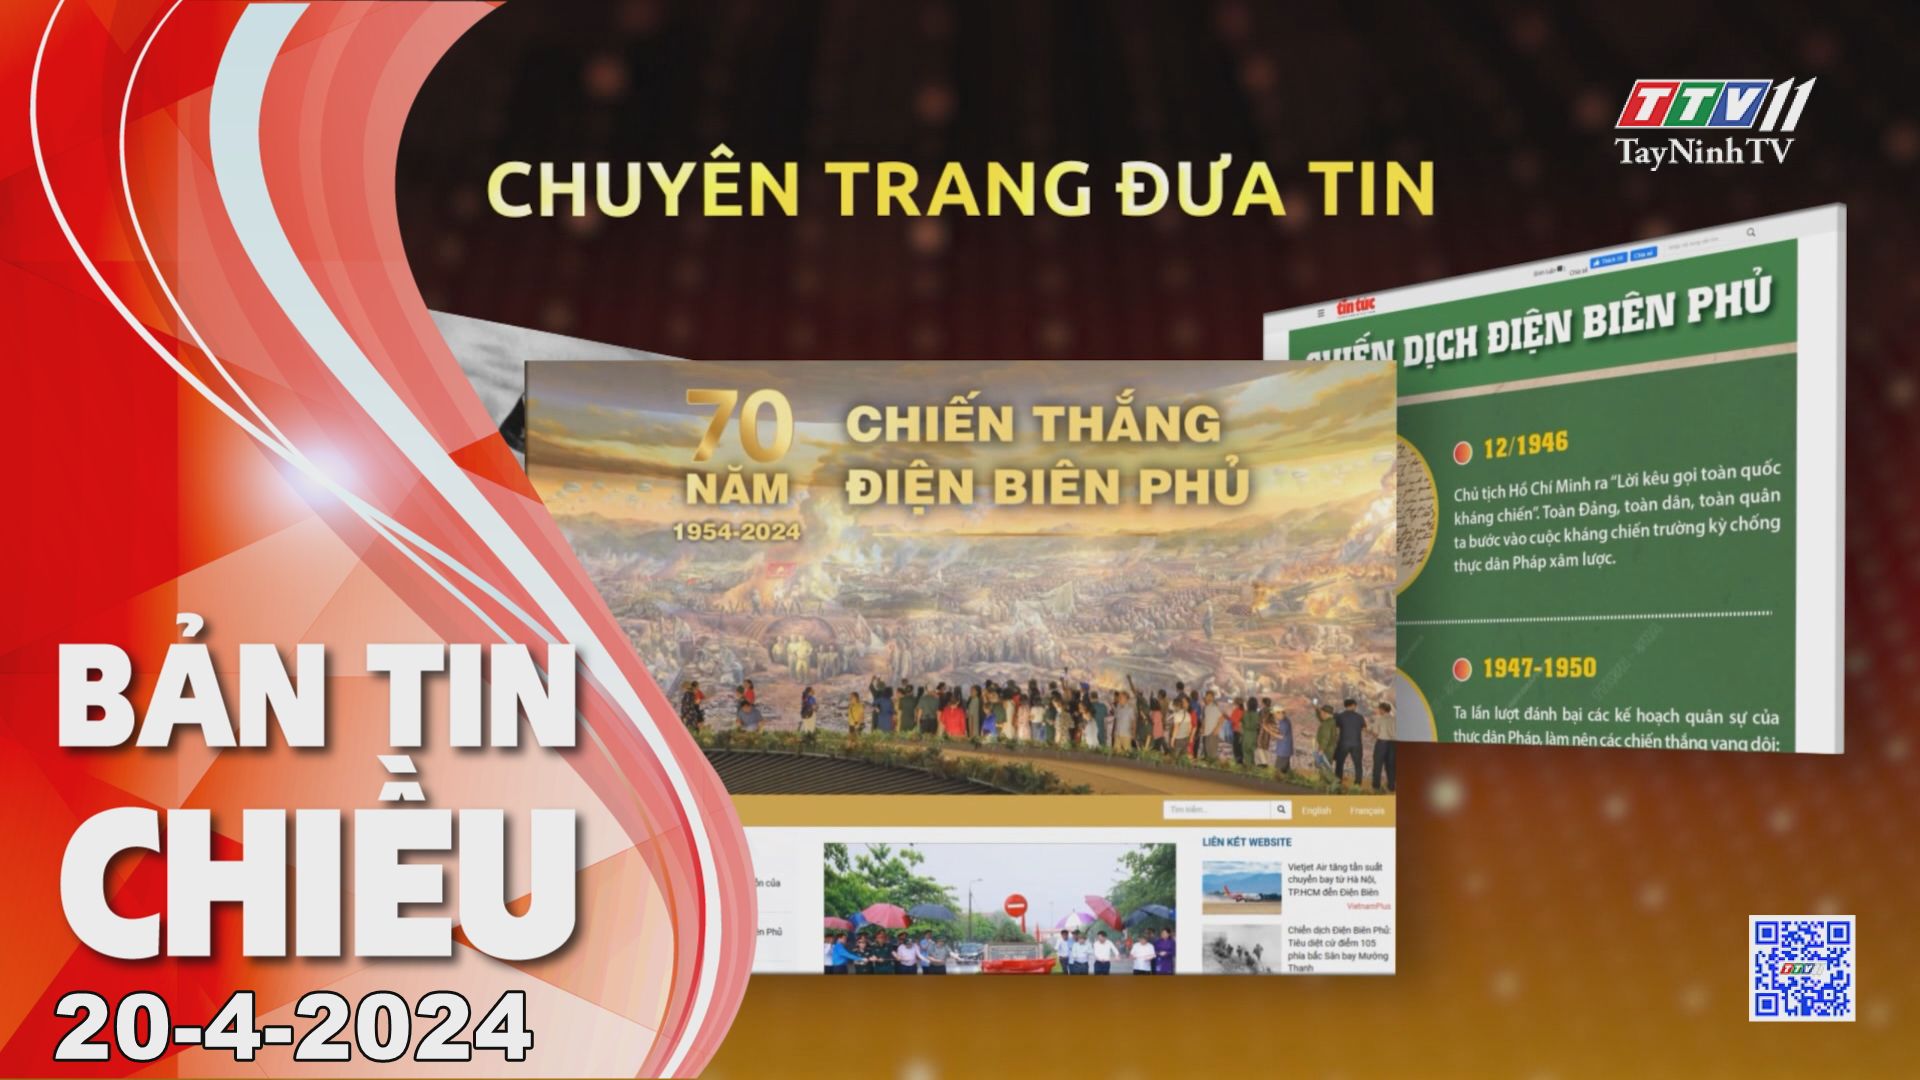 Bản tin chiều 20-4-2024 | Tin tức hôm nay | TayNinhTV 